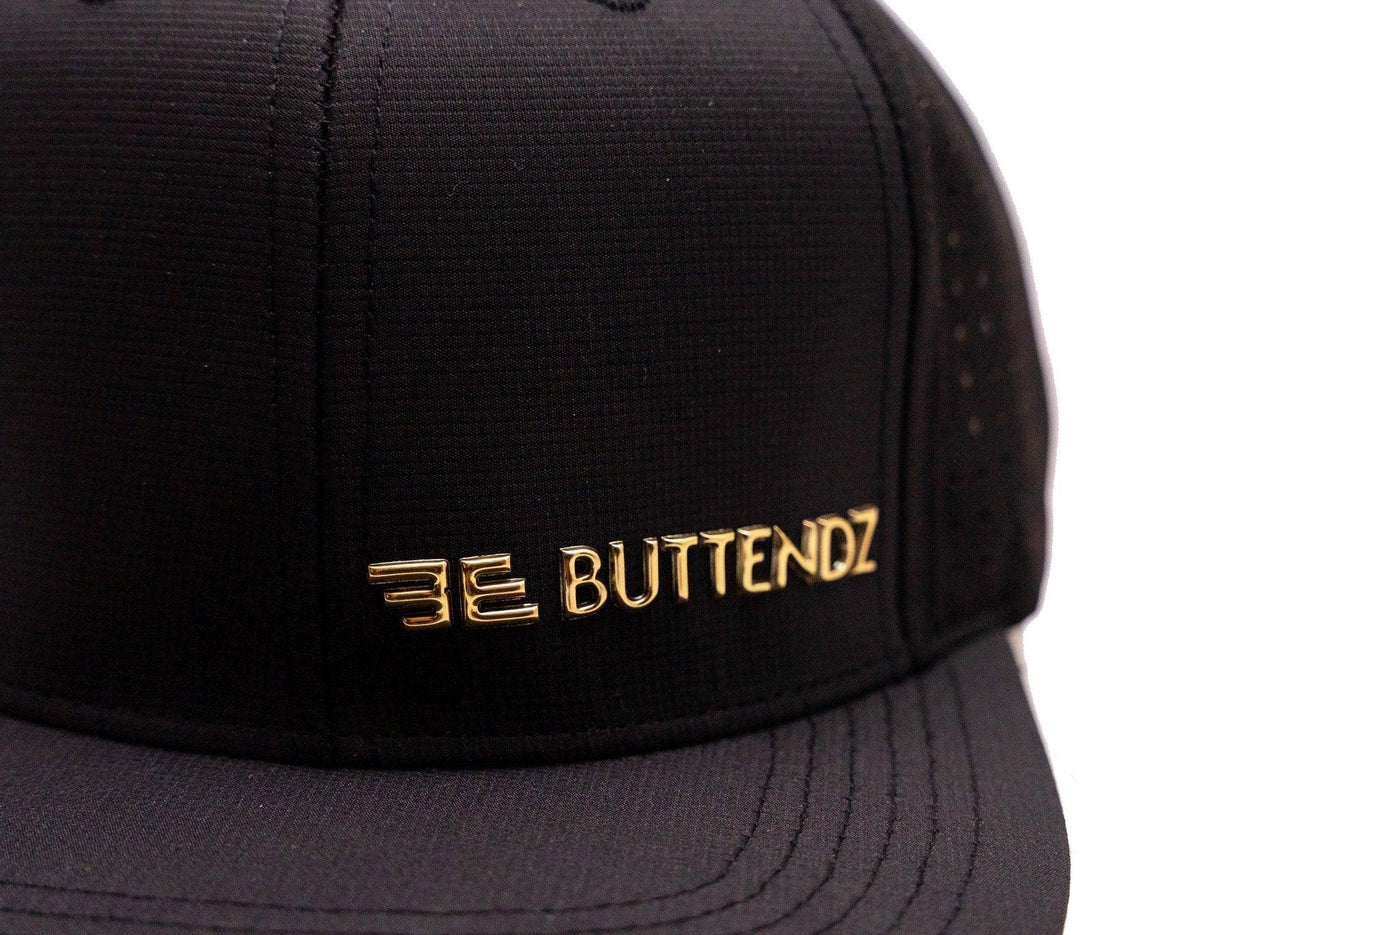 Black Performance Hat - Buttendz